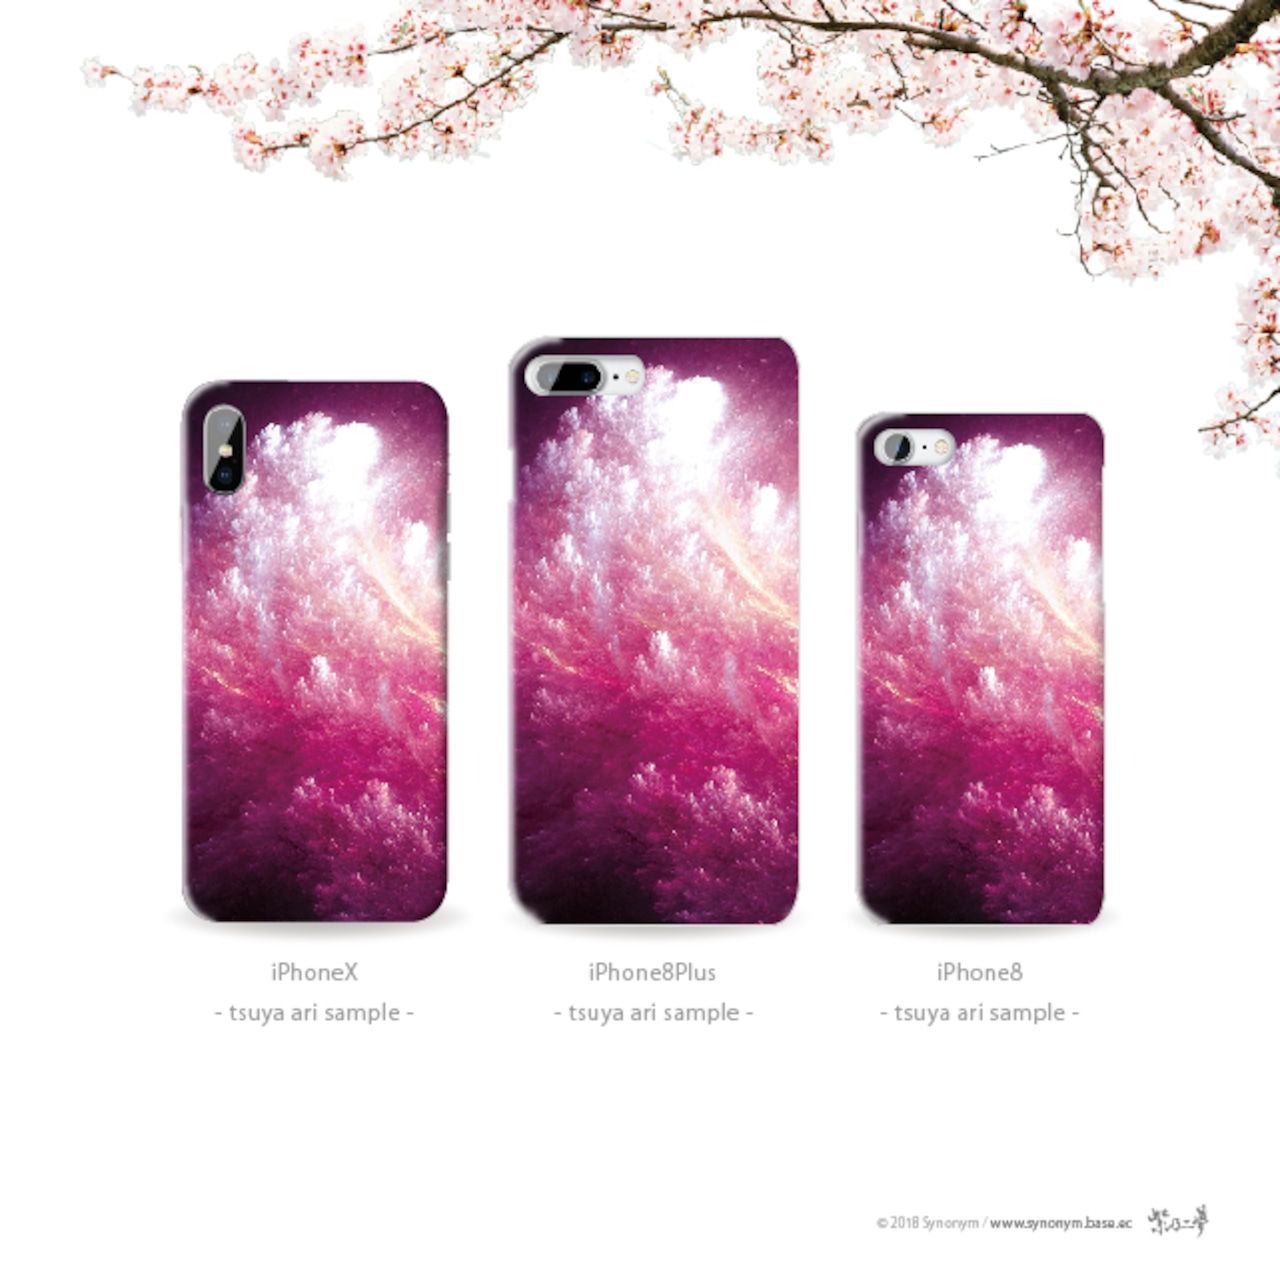 波桜 - 和風 iPhoneケース